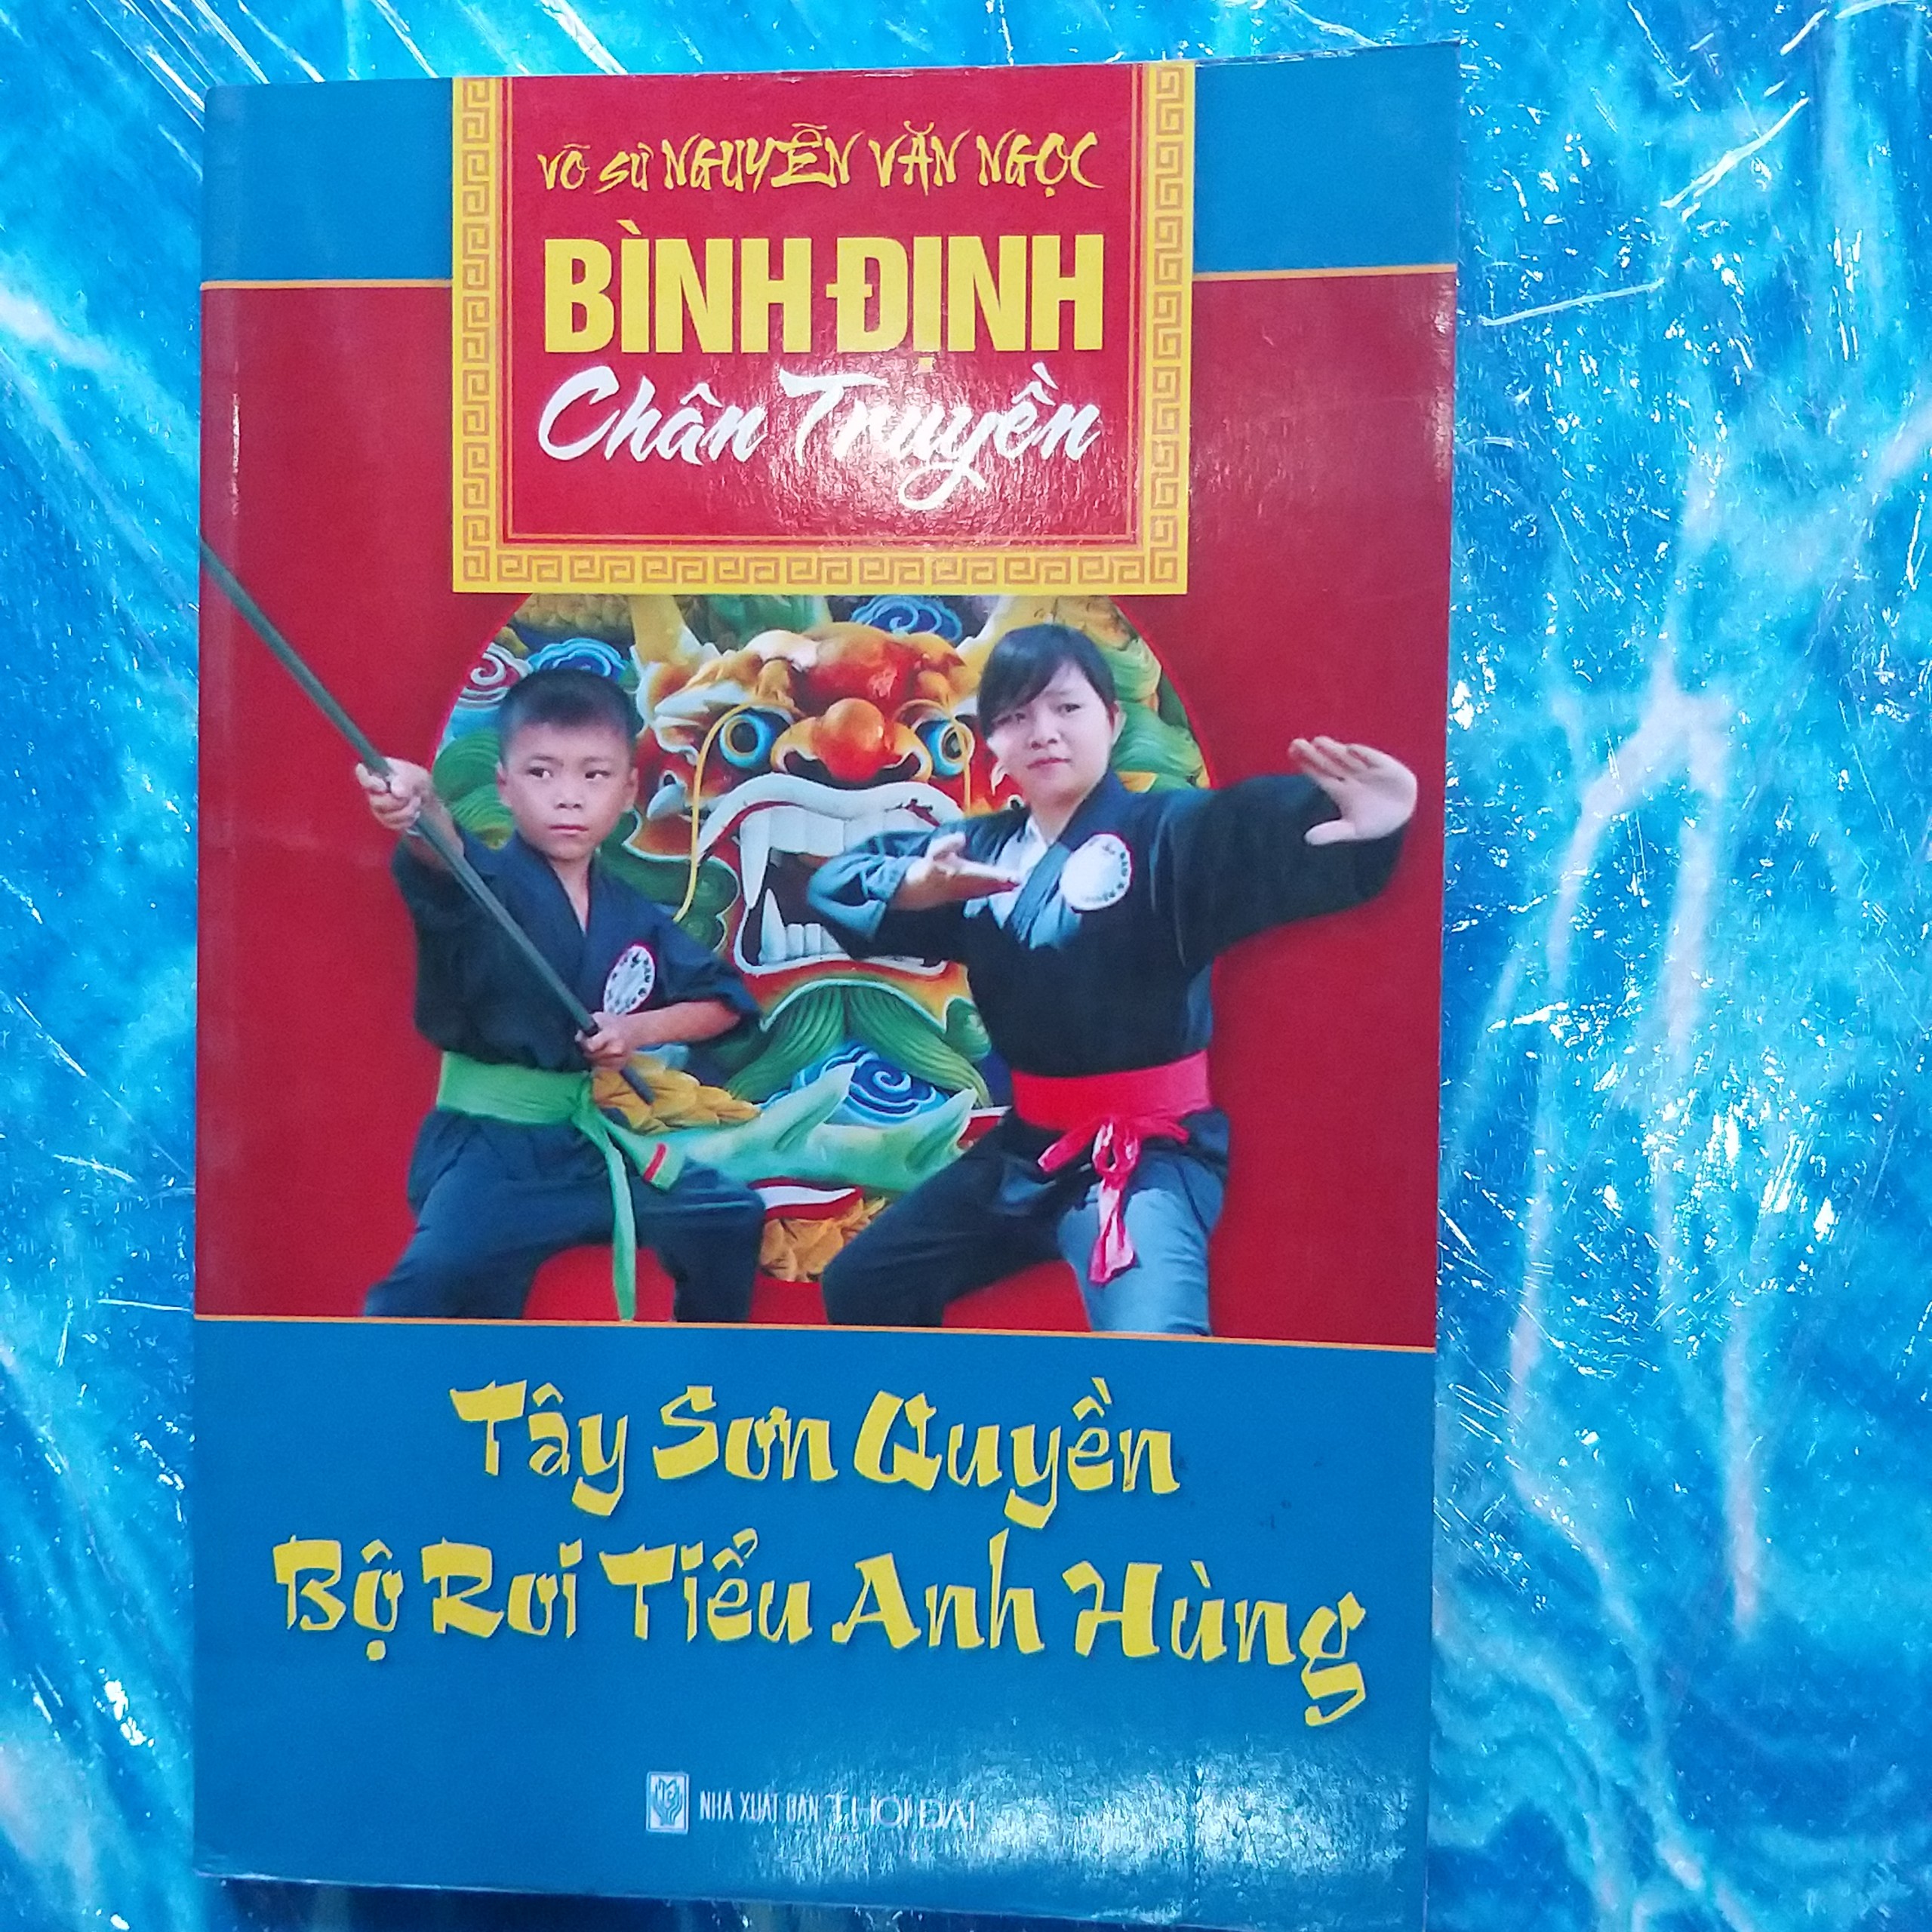 Sách Võ Bình Định Chân Truyền: Tây Sơn Quyền Bộ Roi Tiểu Anh Hùng